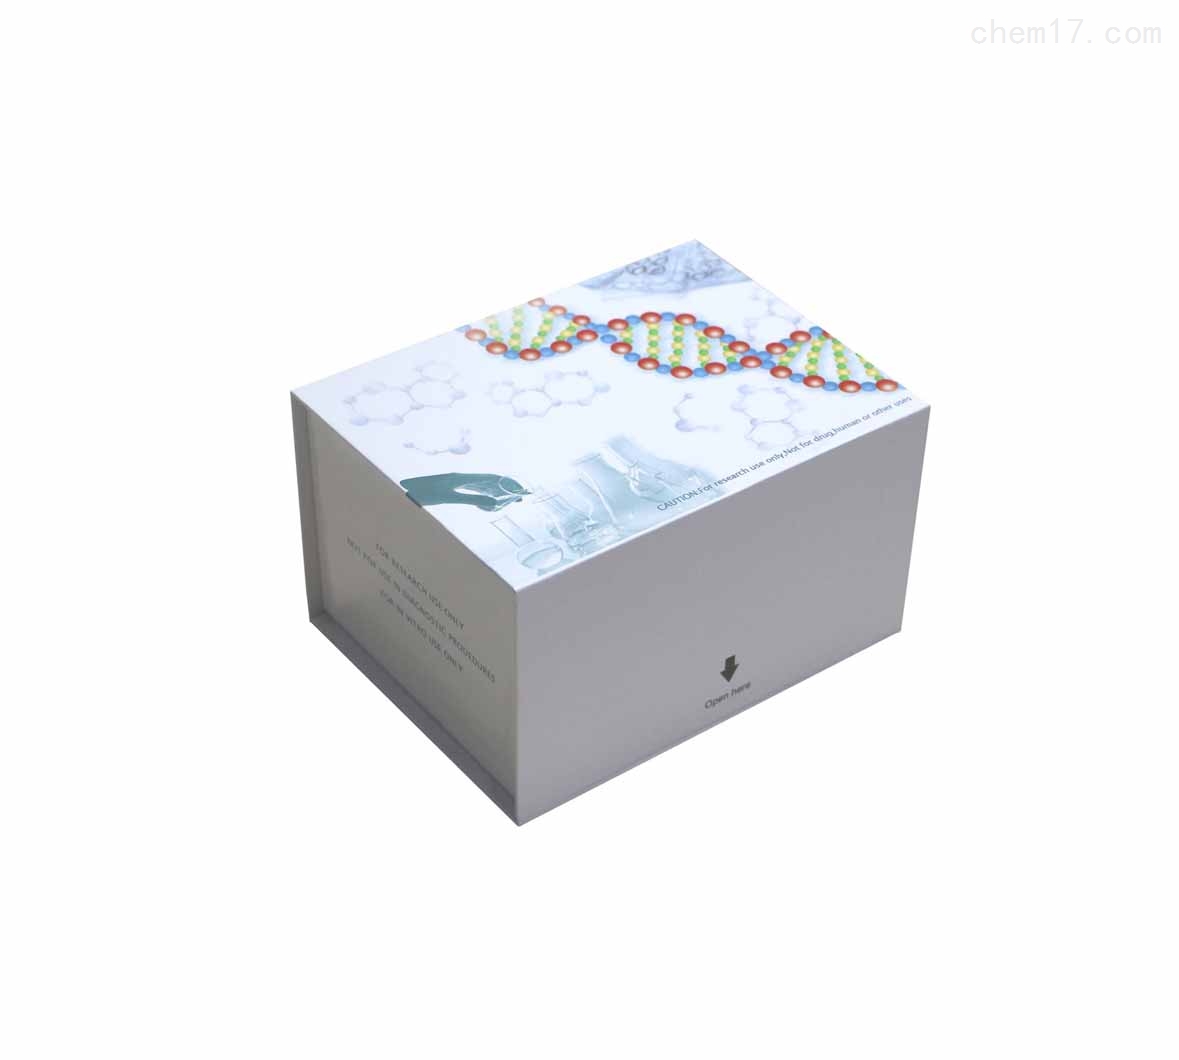 人皮质抑素/皮质醇稳定蛋白(CORT)ELISA试剂盒检测灵敏